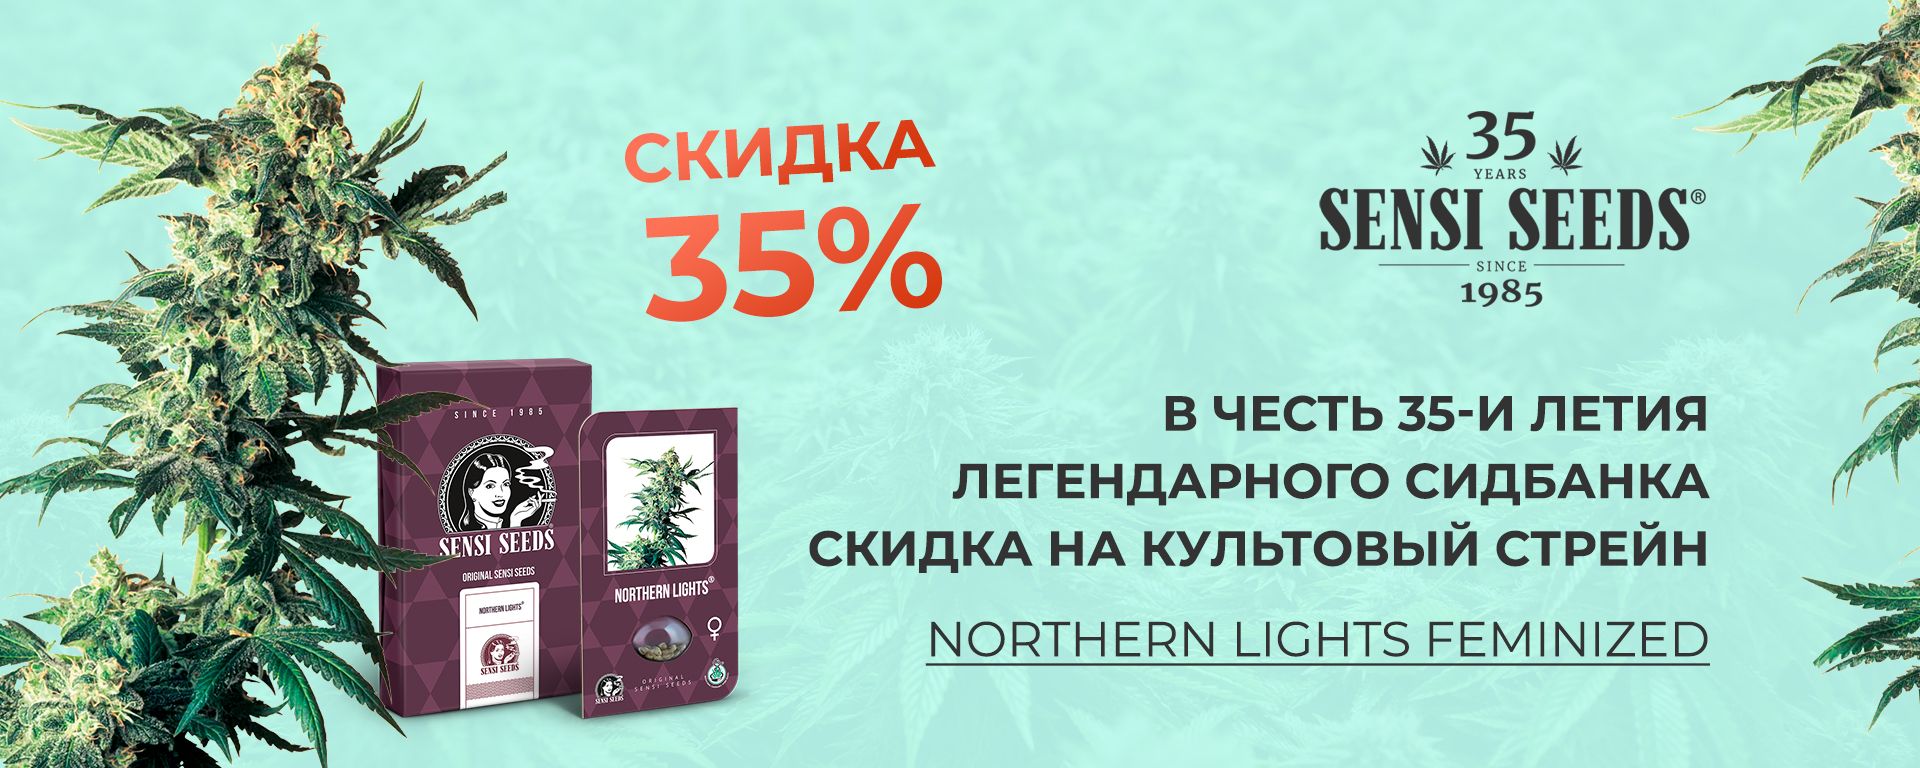 Магазины семян в украине конопля музыка слушать онлайн линда марихуана